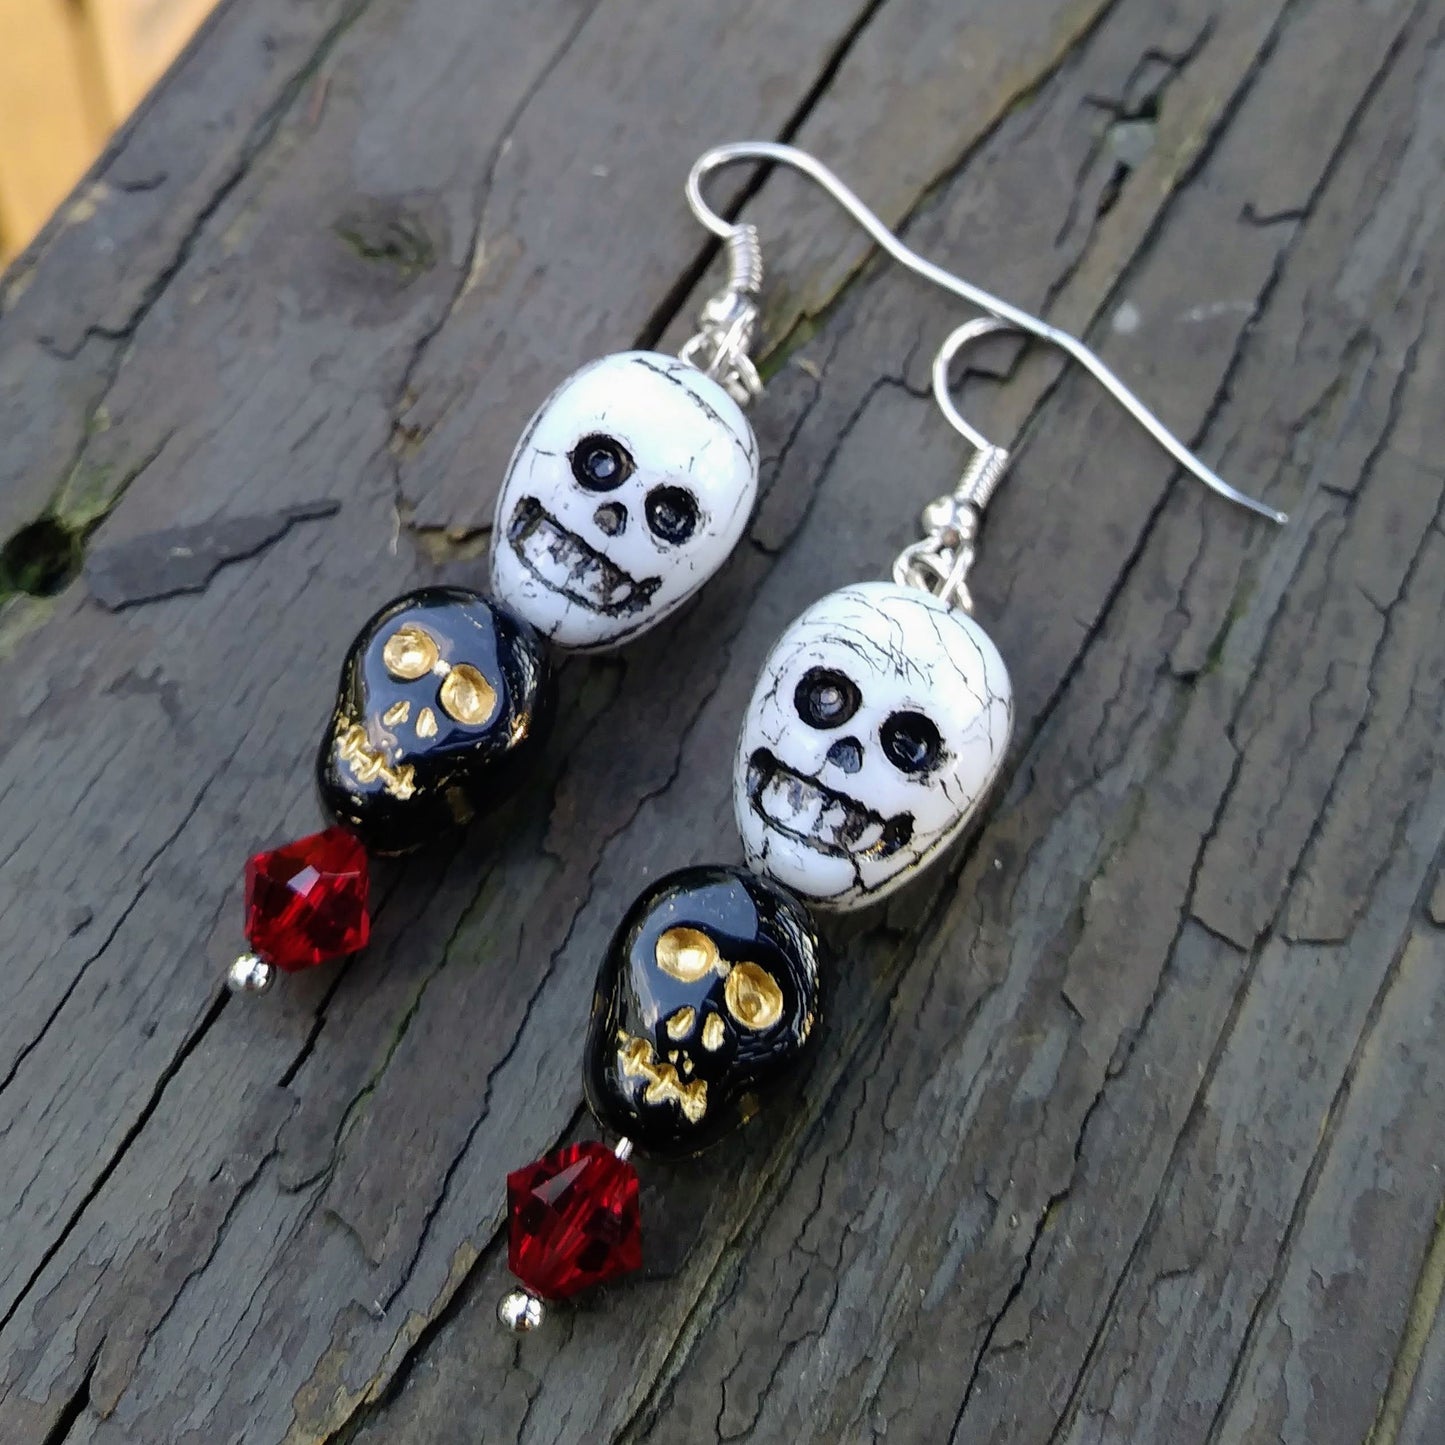 Black Skull White Skull Dangle Earrings with Red Austrian Crystals